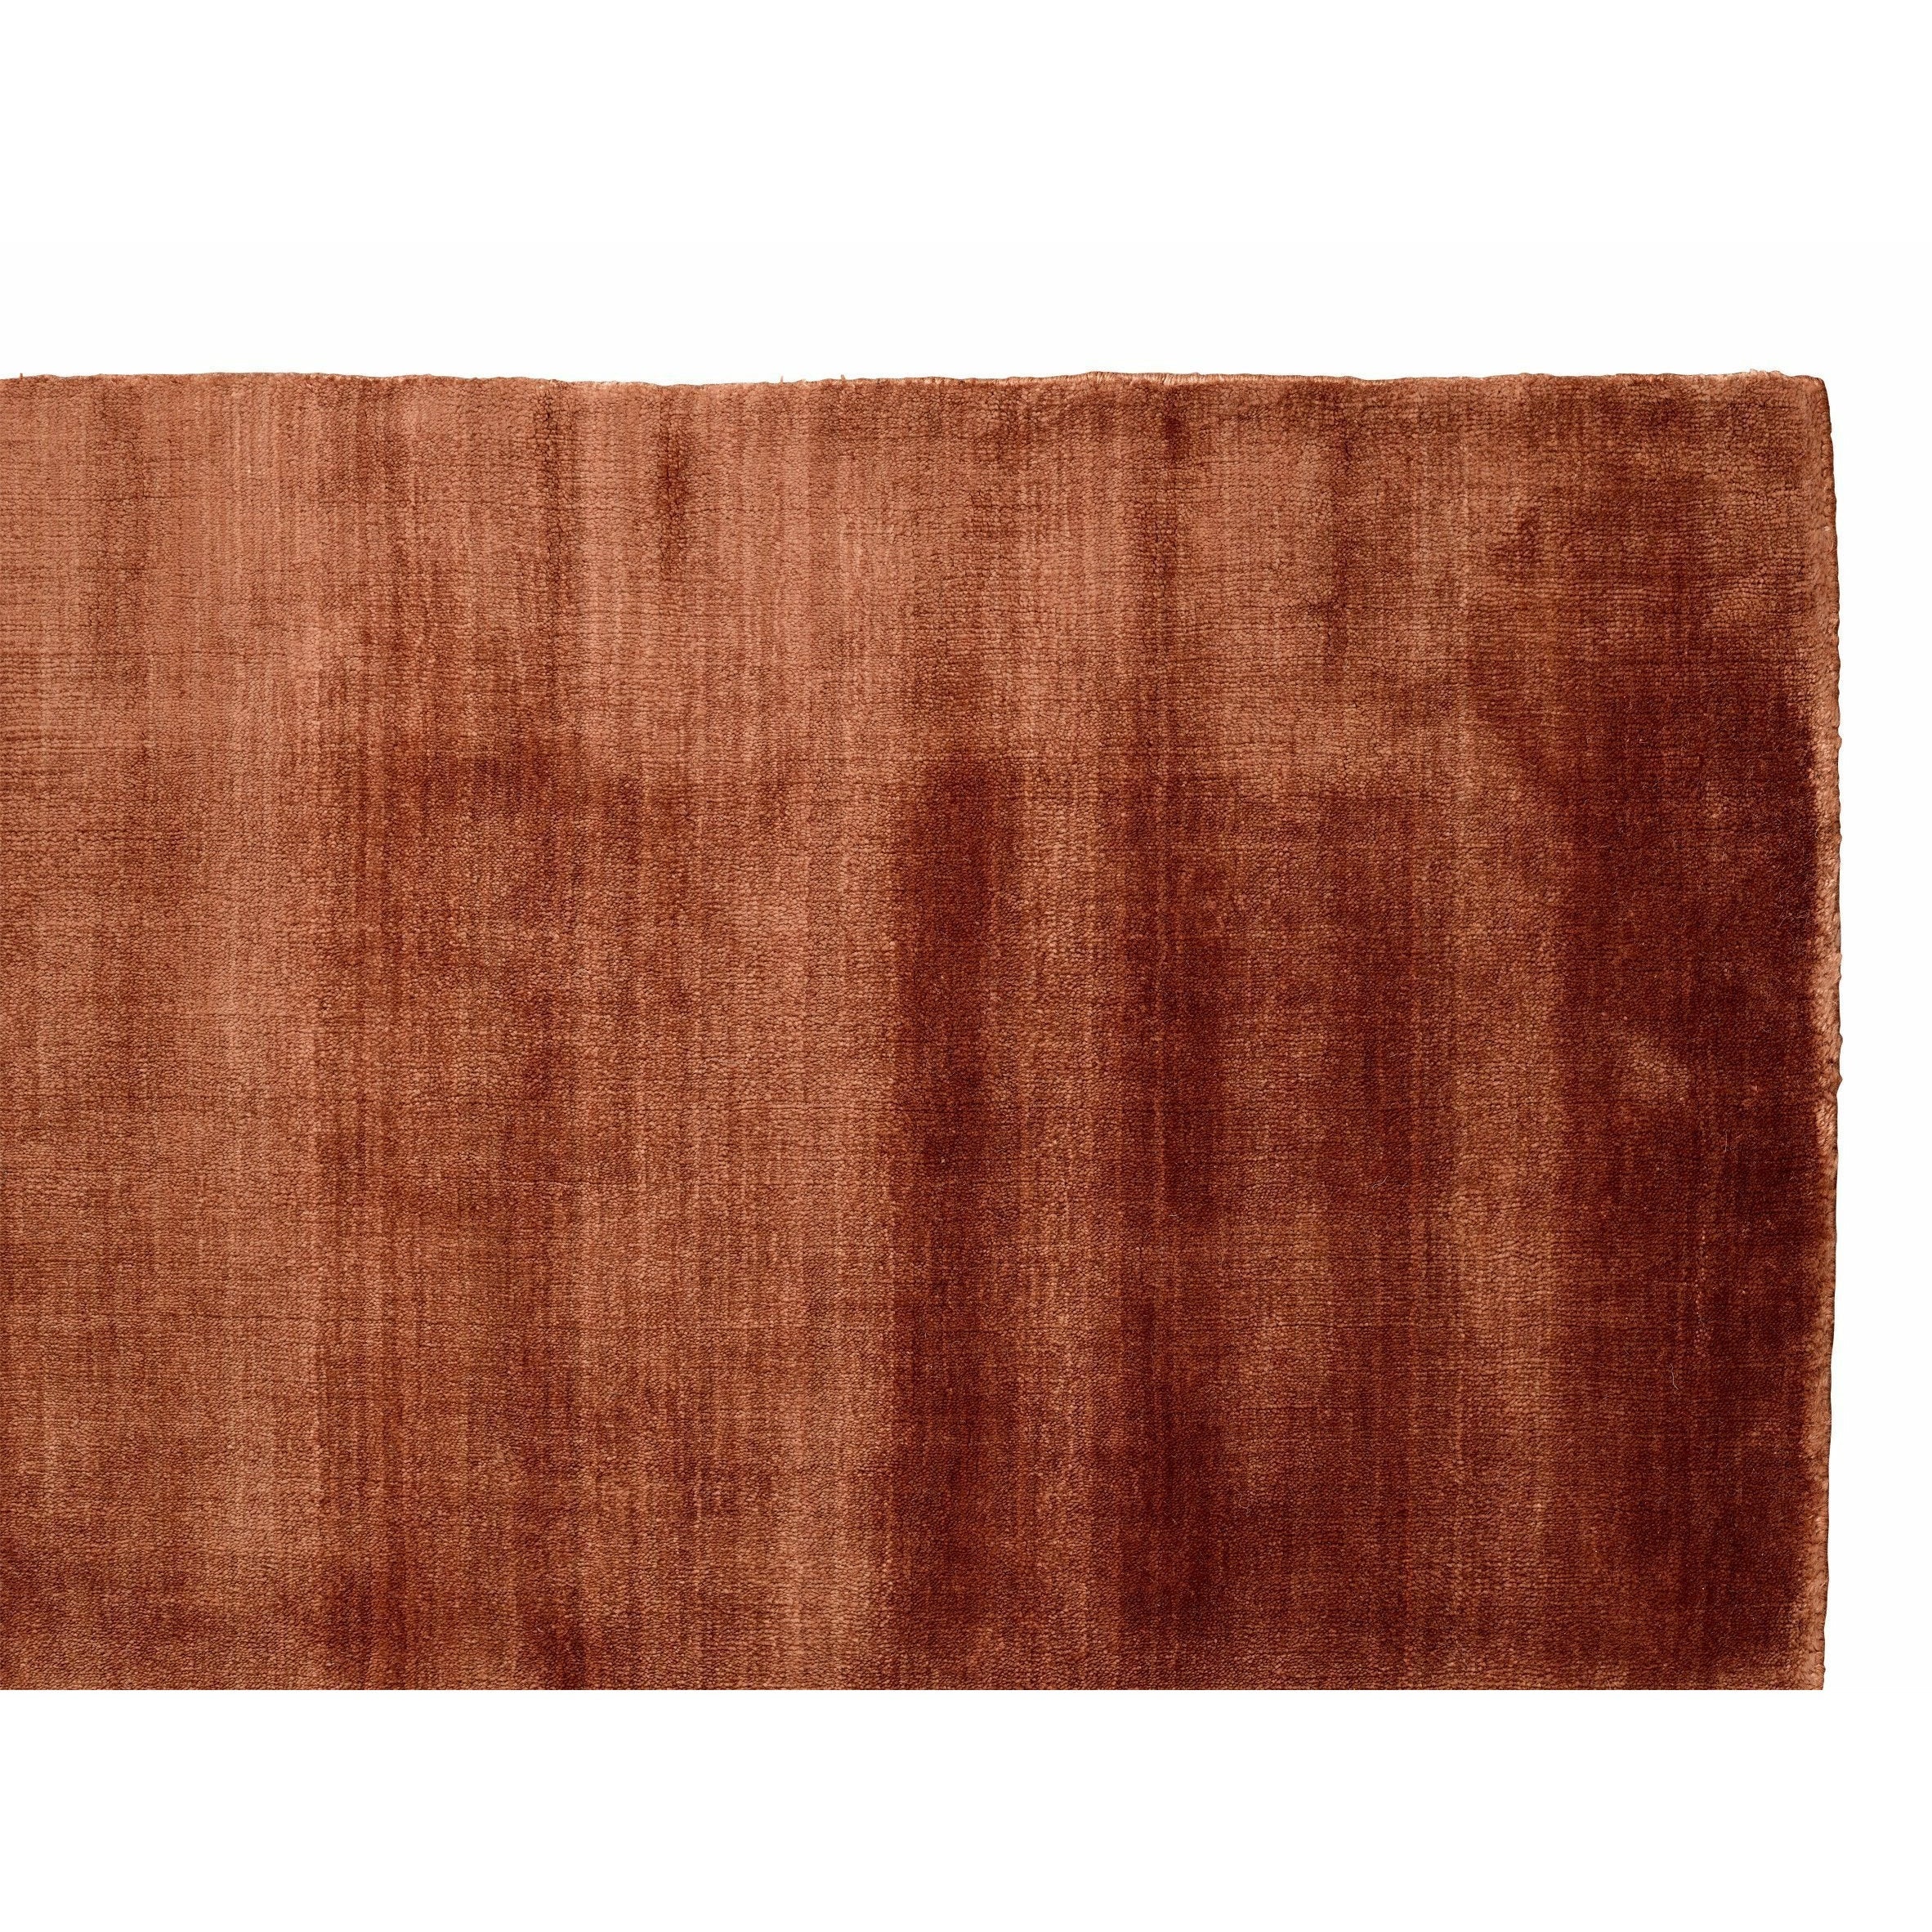 Massimo Bambu -matta koppar, 170x240 cm